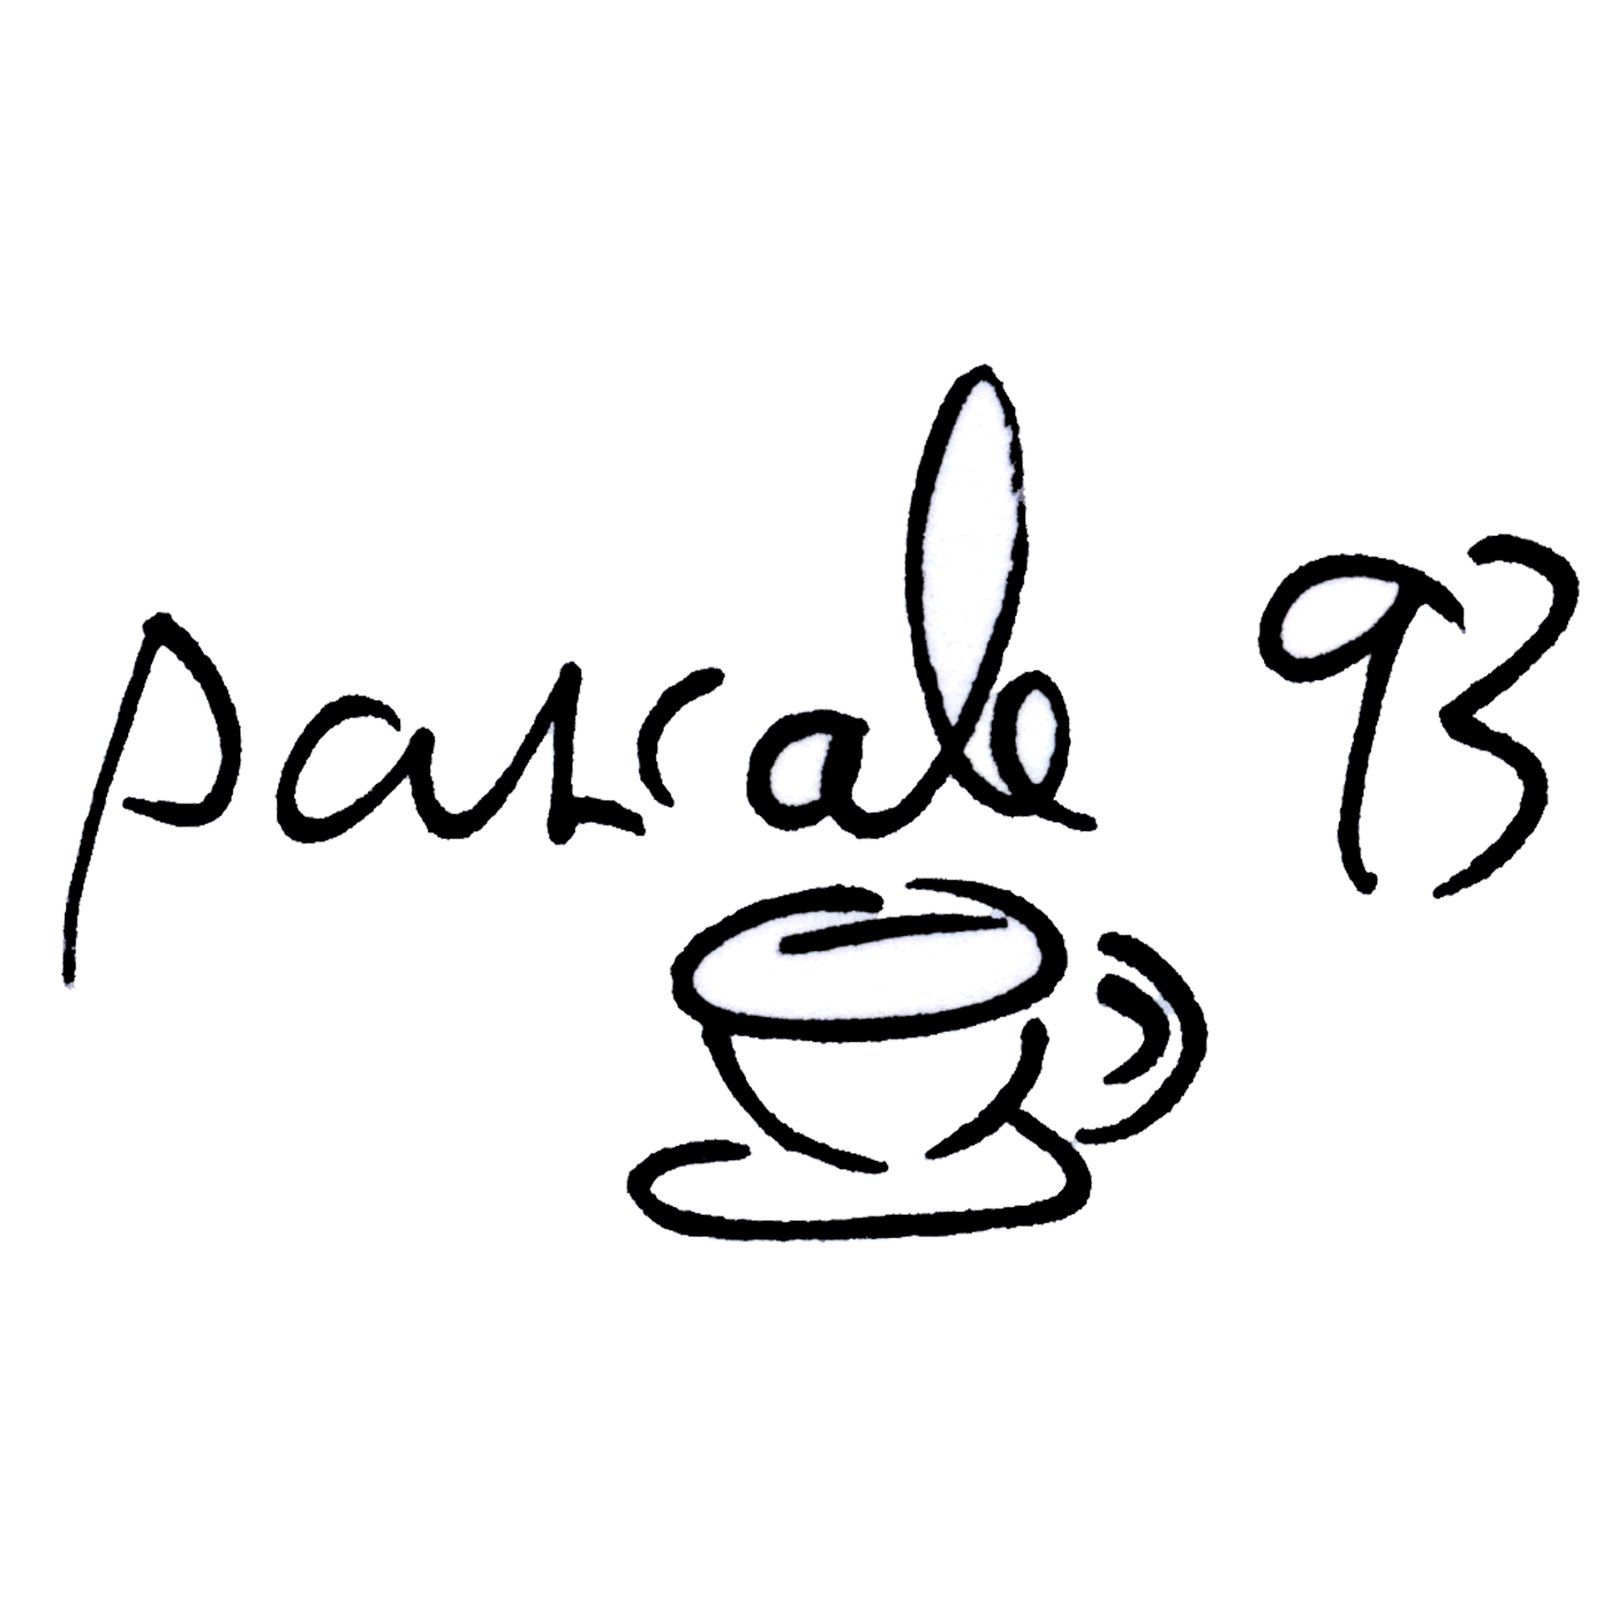 Pascale93